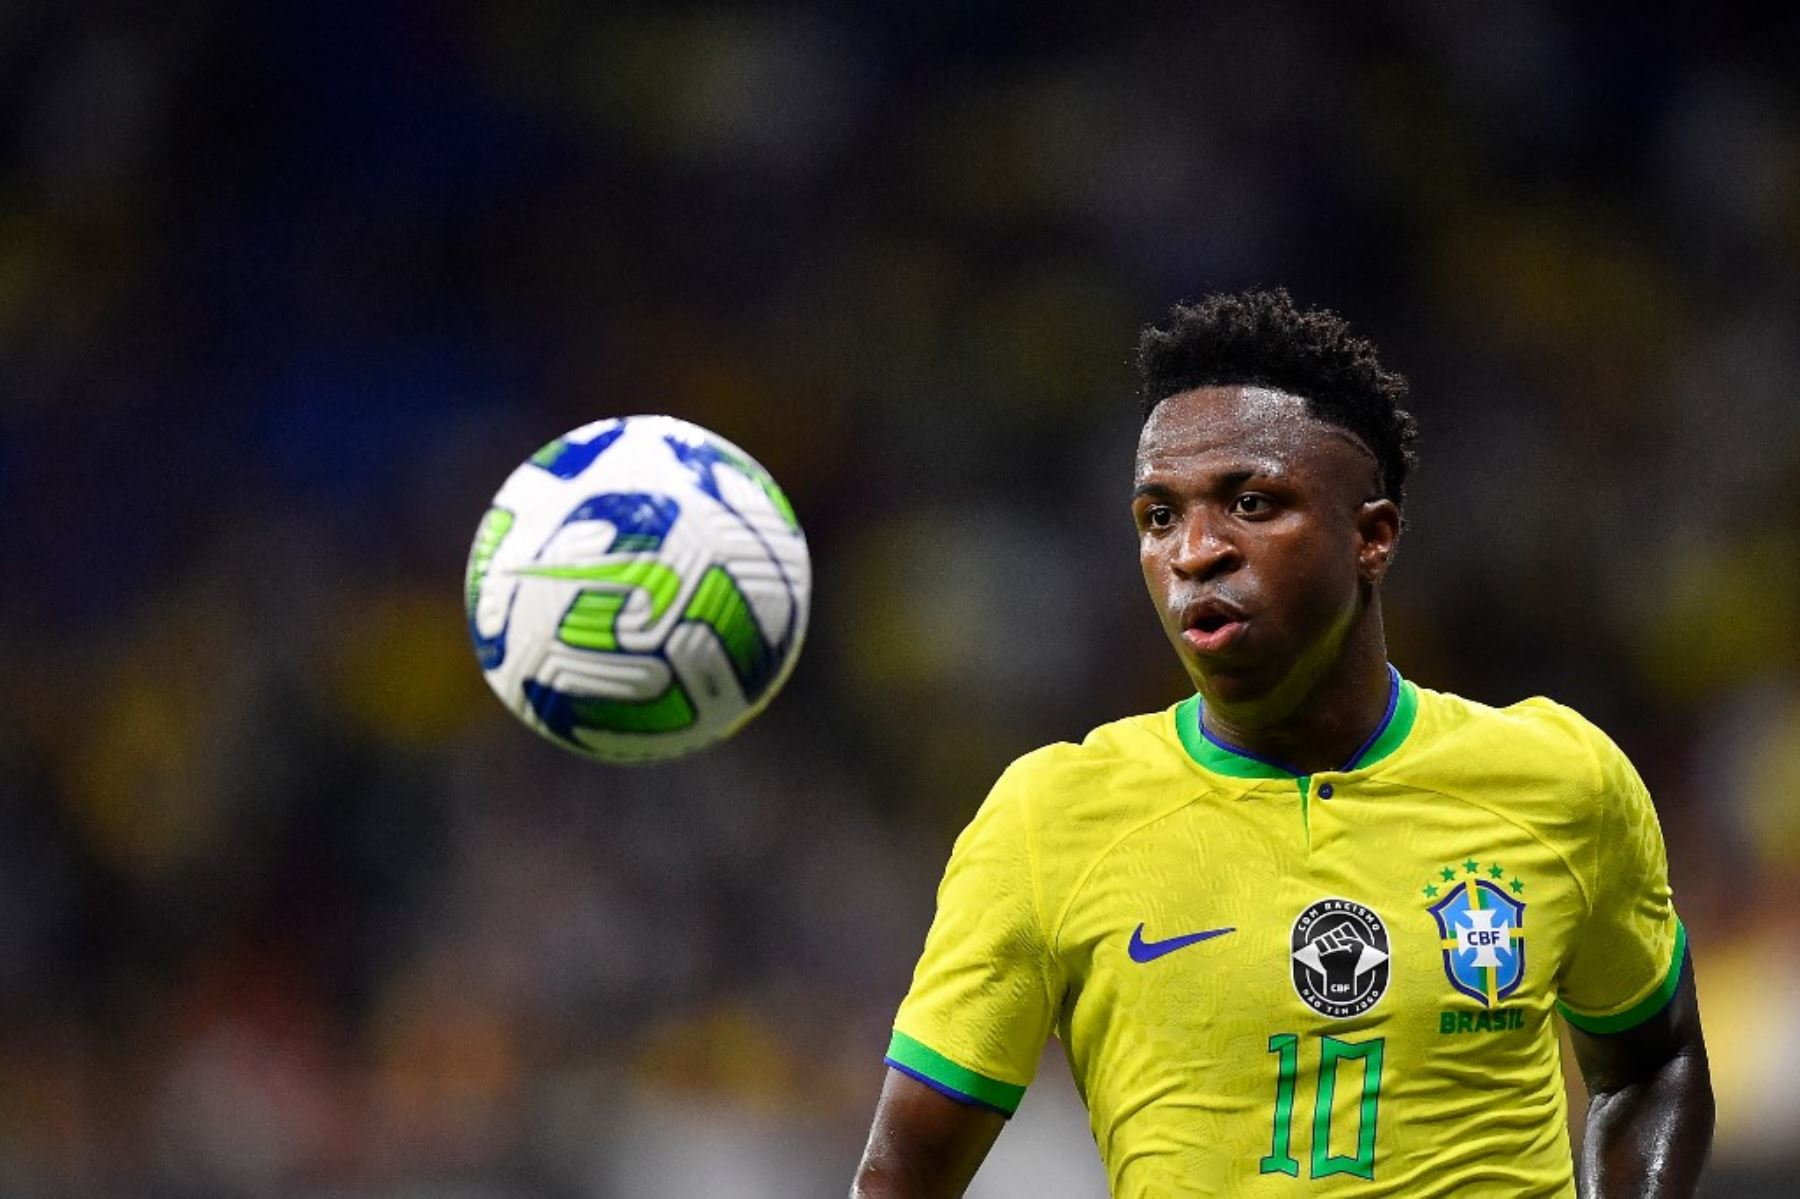 Se observaron varias acciones contra el racismo en el partido amistoso entre Brasil y Guinea